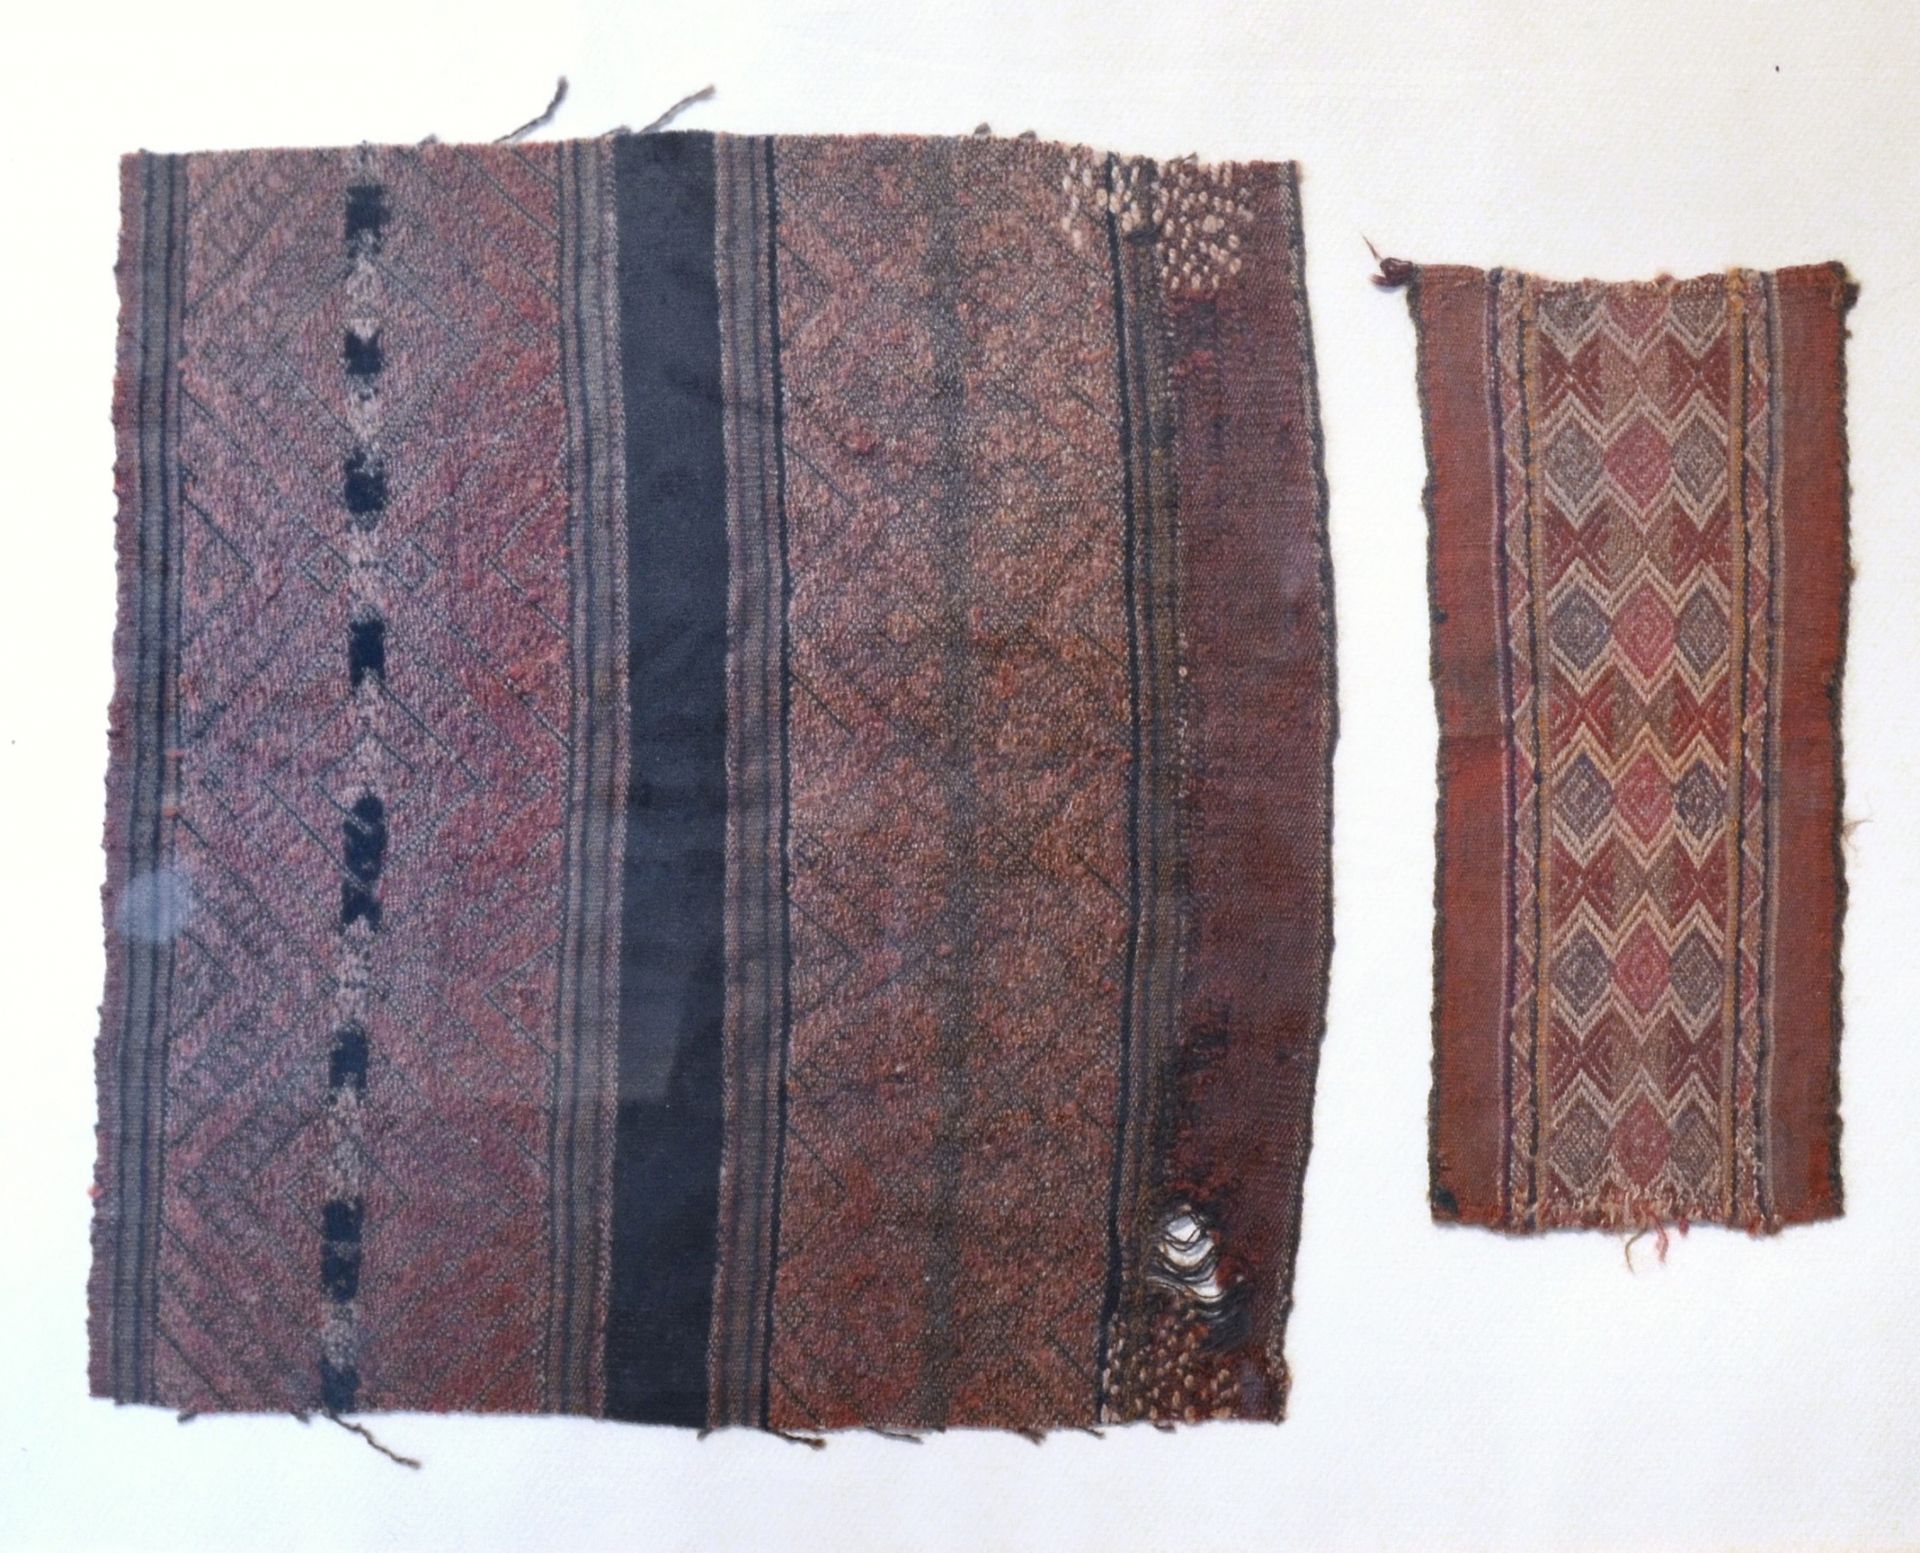 Deux fragments de tissu Ica, Peru, 1450-1532 AD

30,5 x 29 cm

22,5 x 10 cm